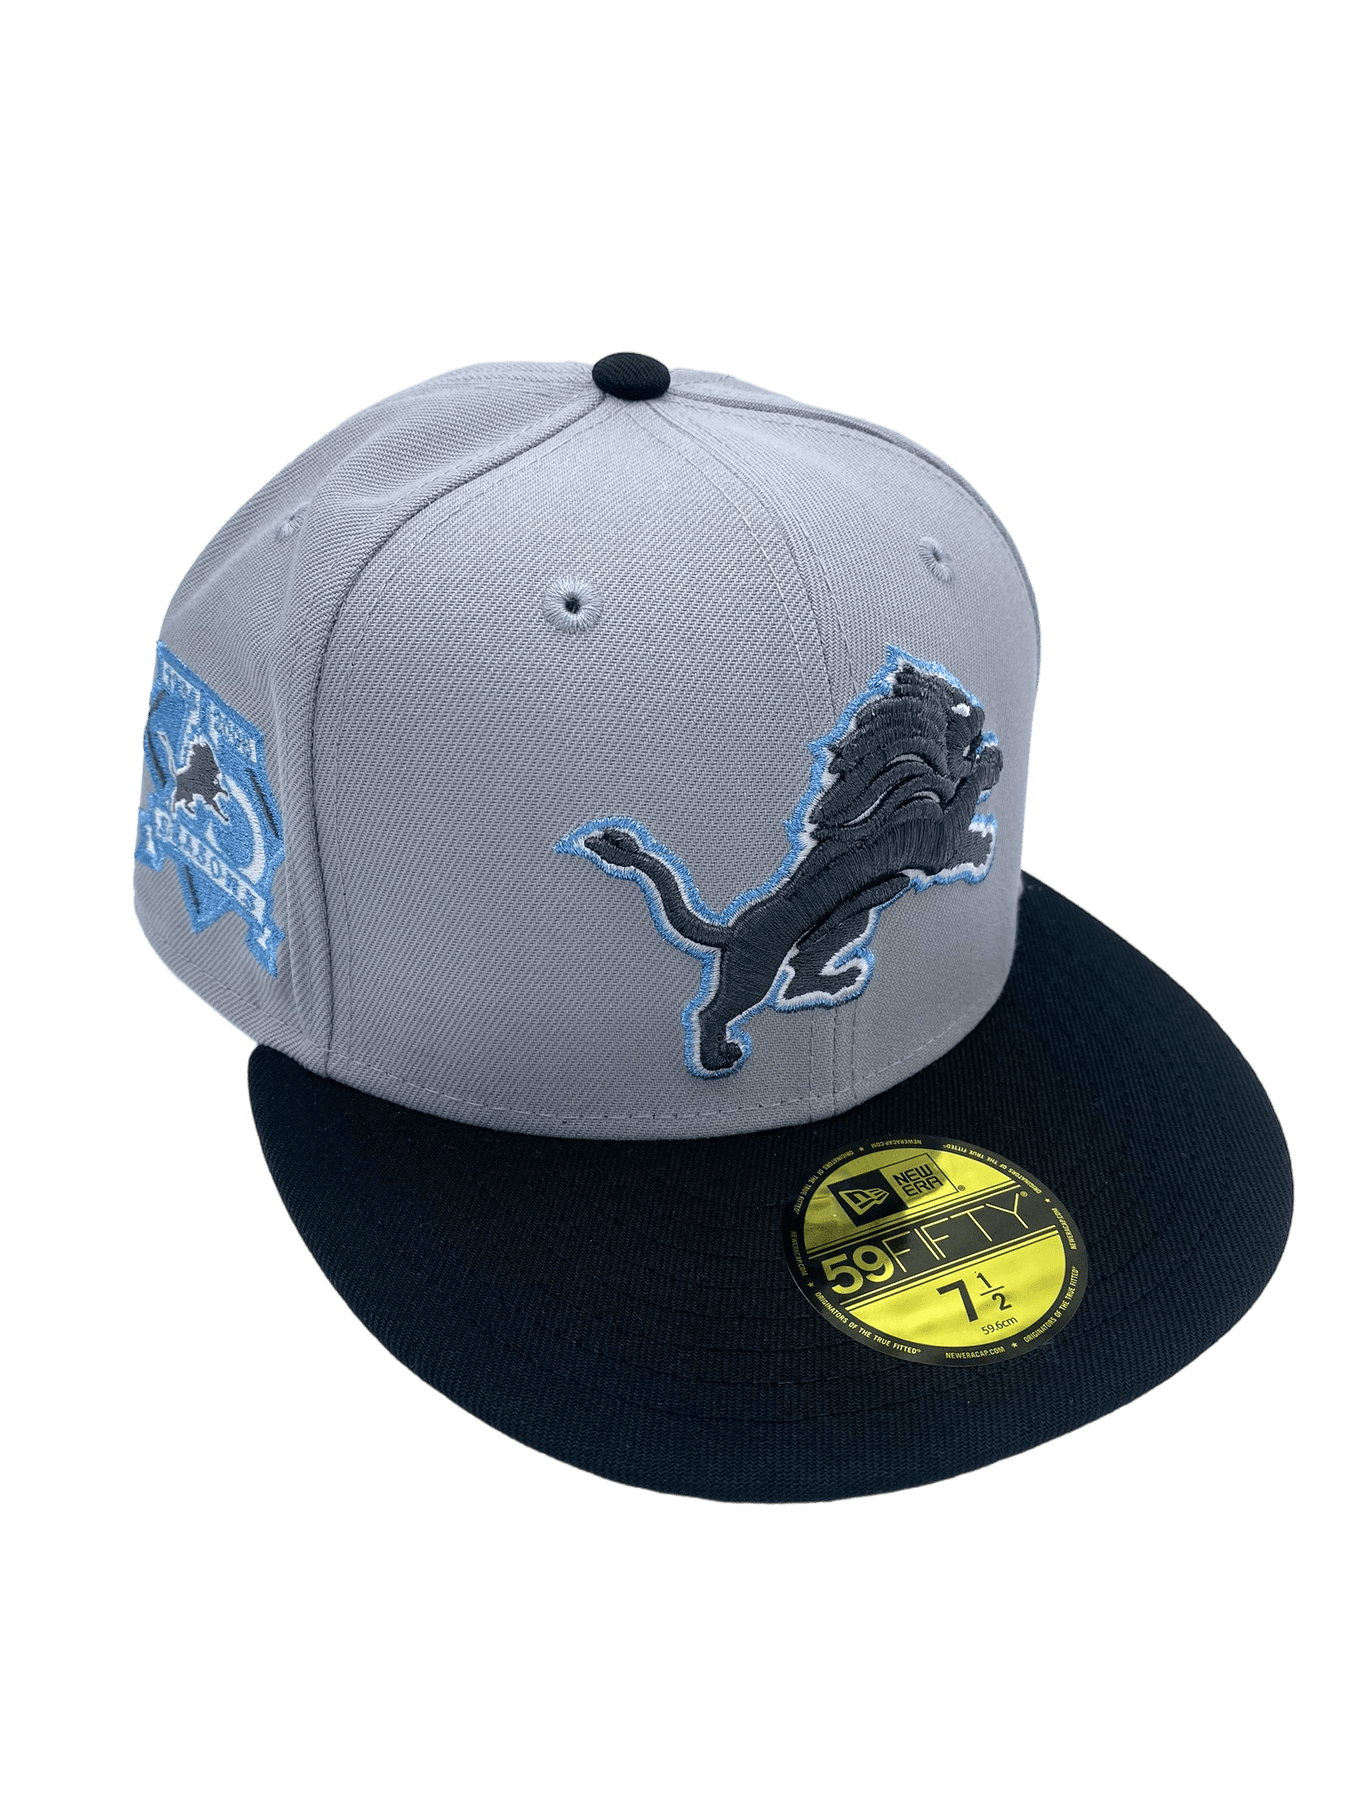 Custom Lions New Era Fitted Hats